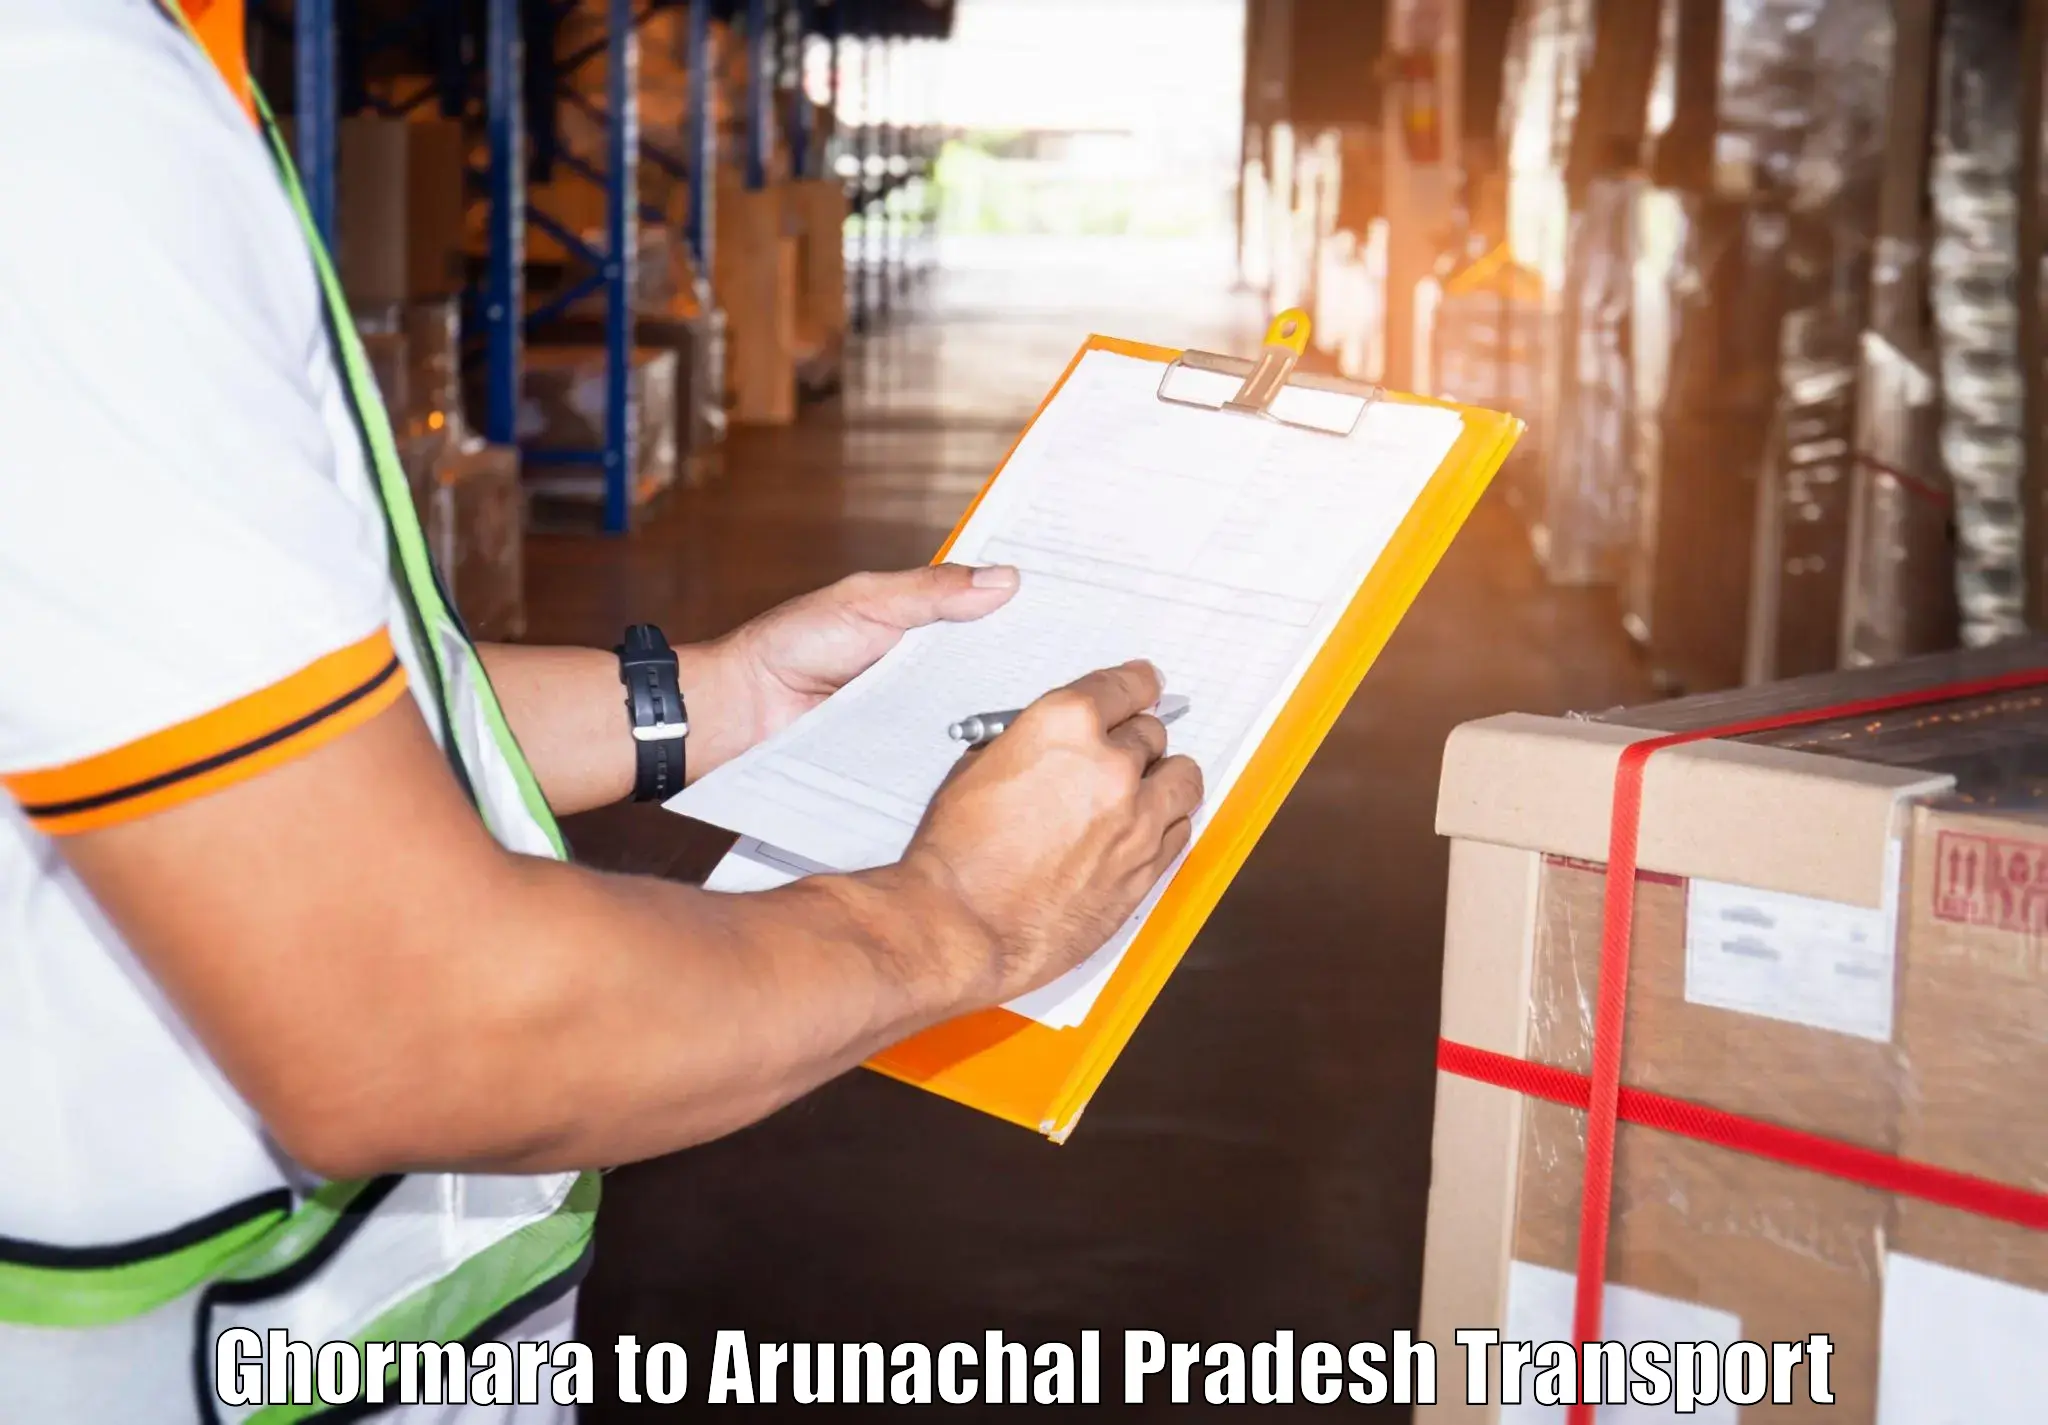 Best transport services in India Ghormara to Arunachal Pradesh